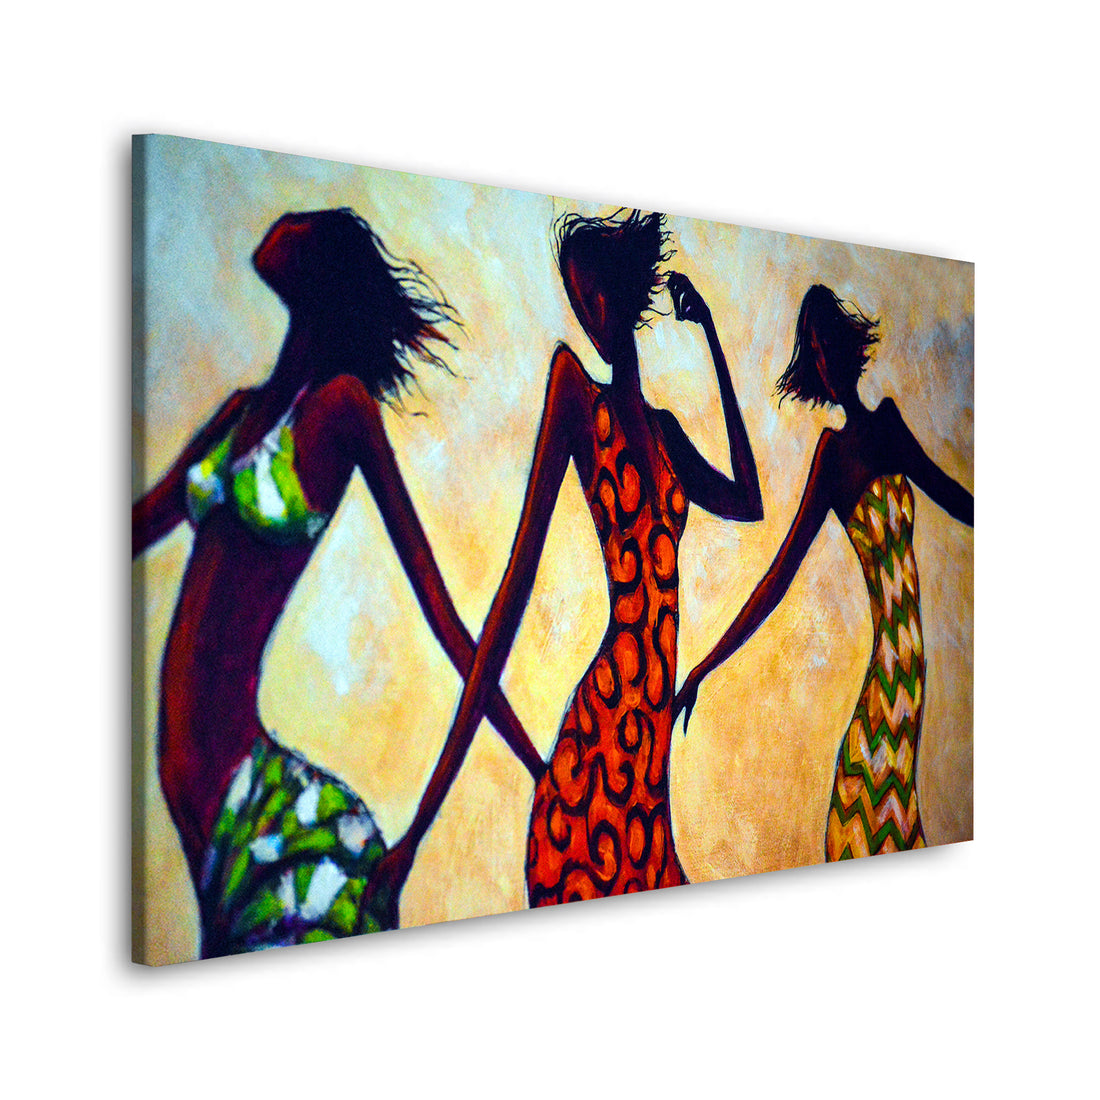 Wandbild afrikanische Frauen Abstract Dance